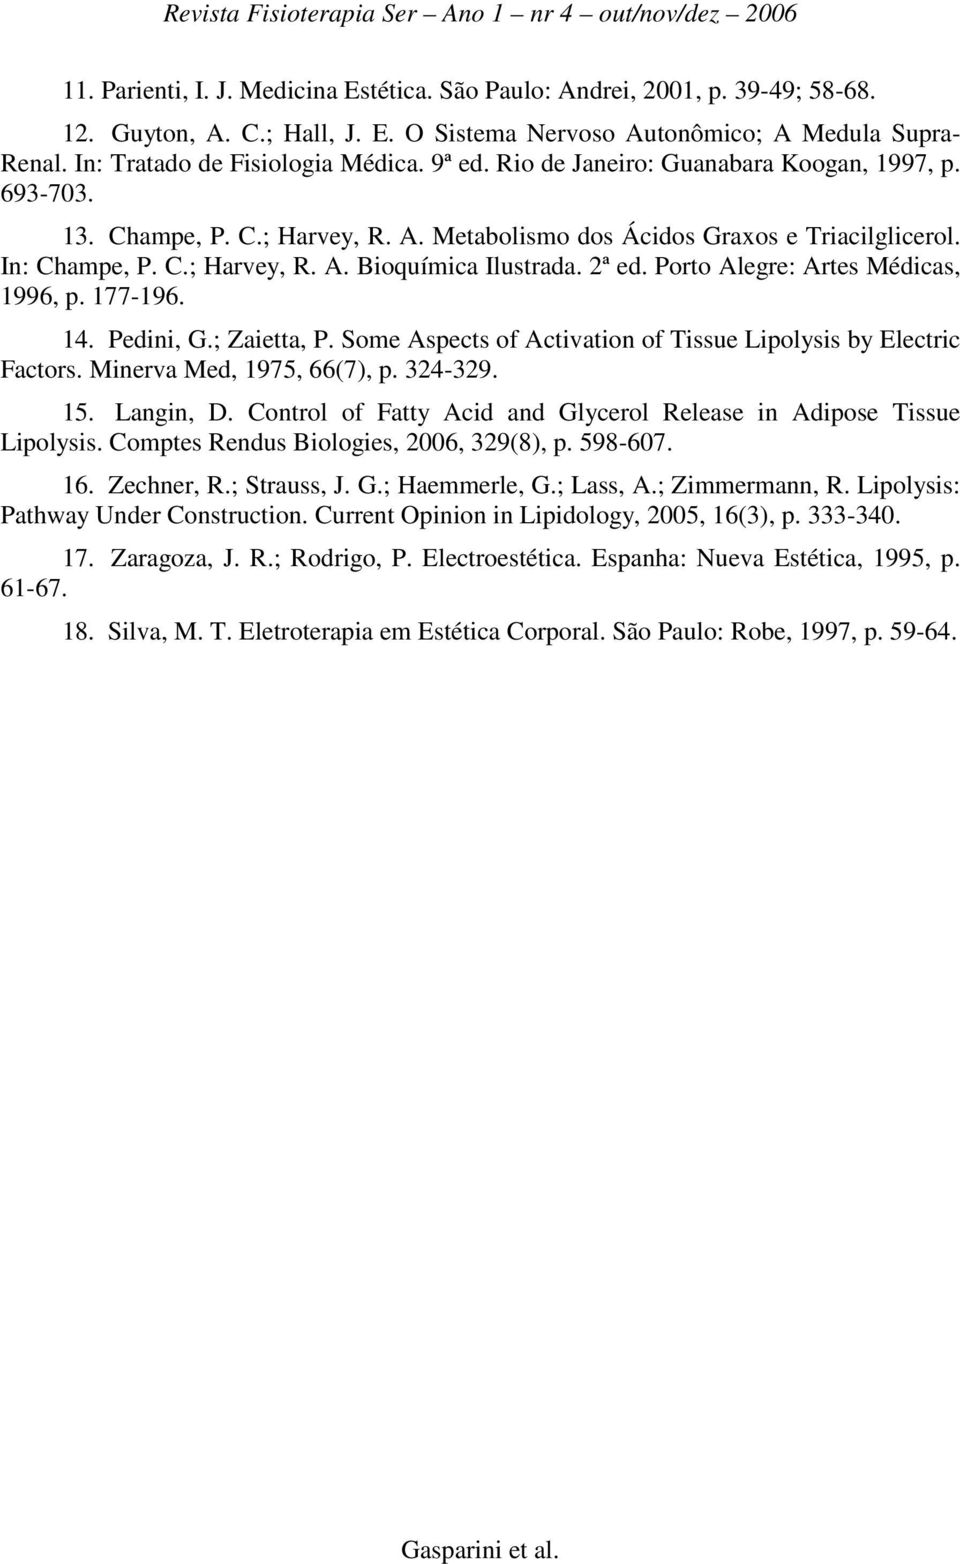 2ª ed. Porto Alegre: Artes Médicas, 1996, p. 177-196. 14. Pedini, G.; Zaietta, P. Some Aspects of Activation of Tissue Lipolysis by Electric Factors. Minerva Med, 1975, 66(7), p. 324-329. 15.